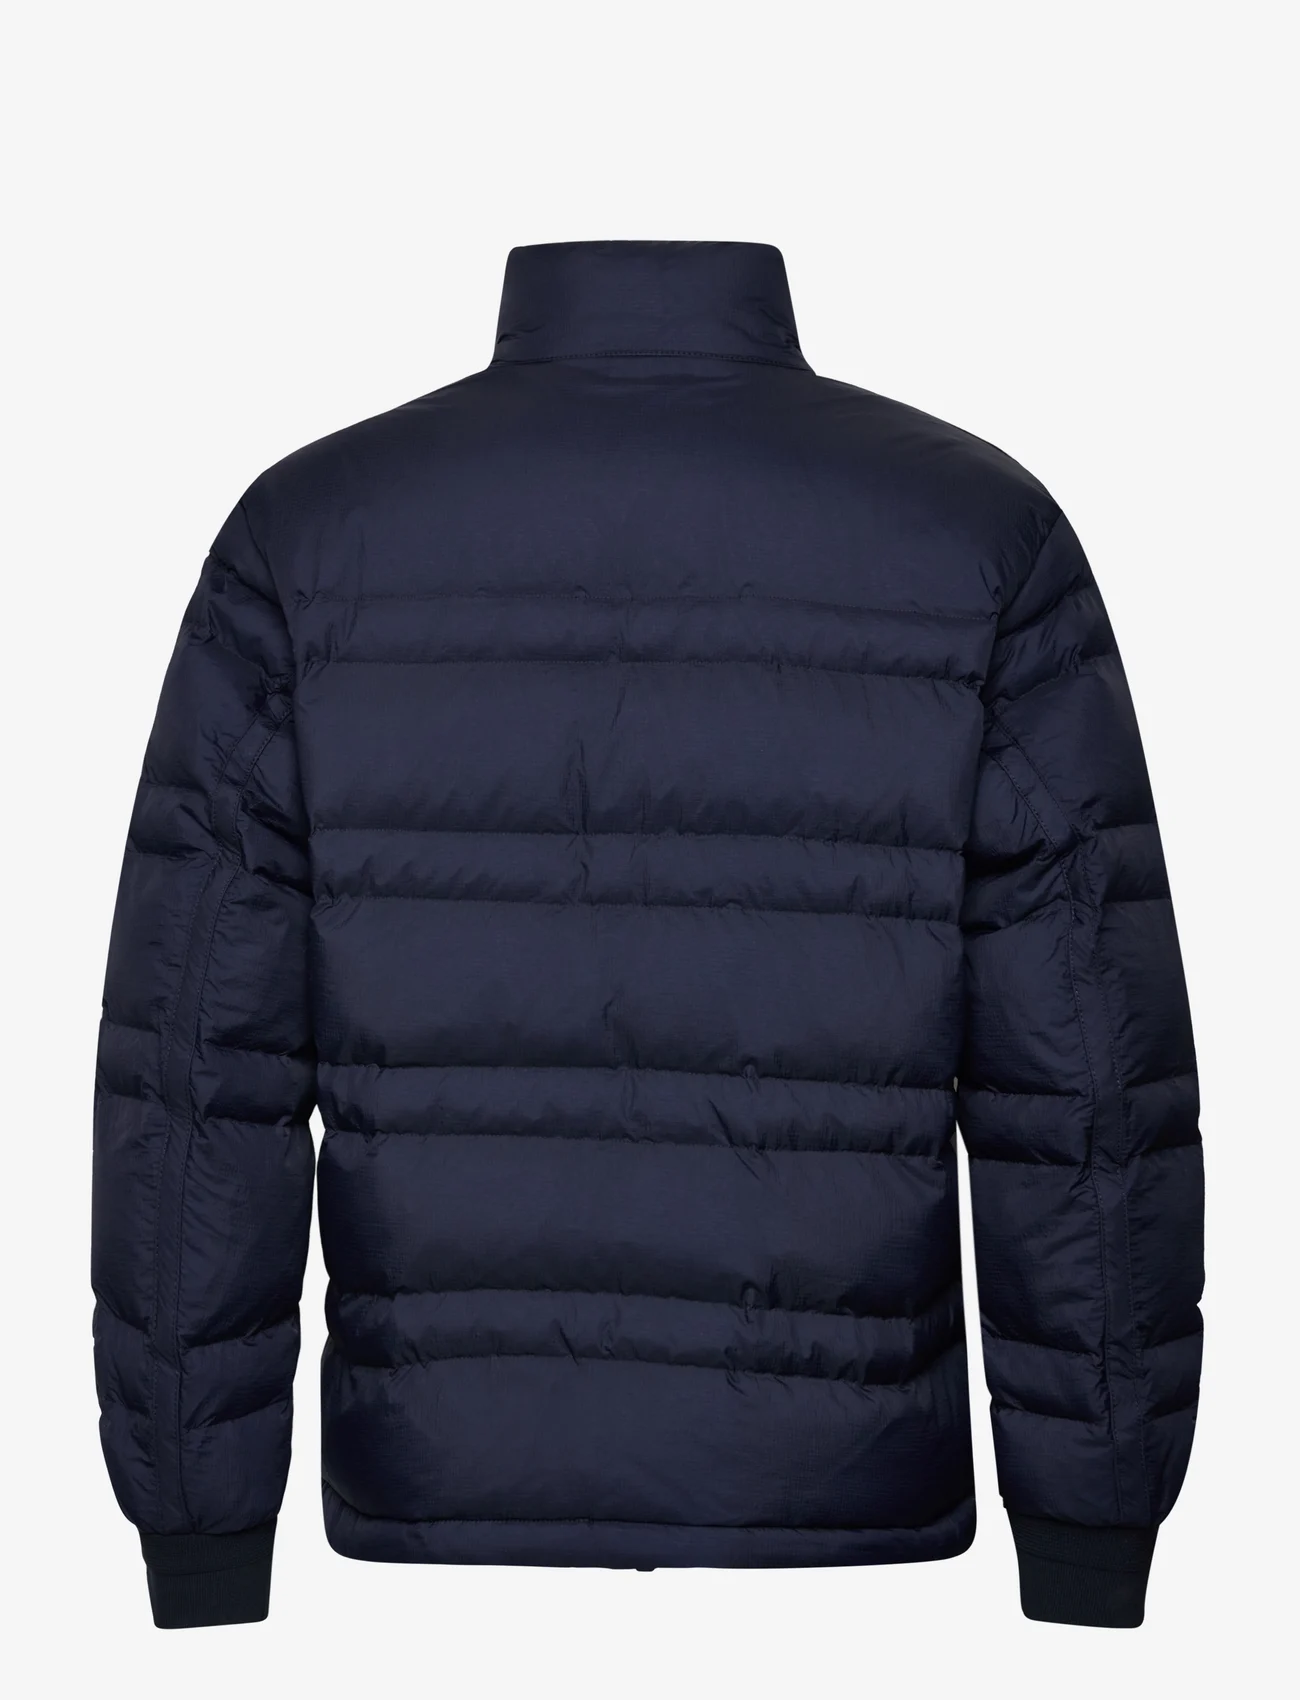 BOSS - Obarker - winter jackets - dark blue - 1